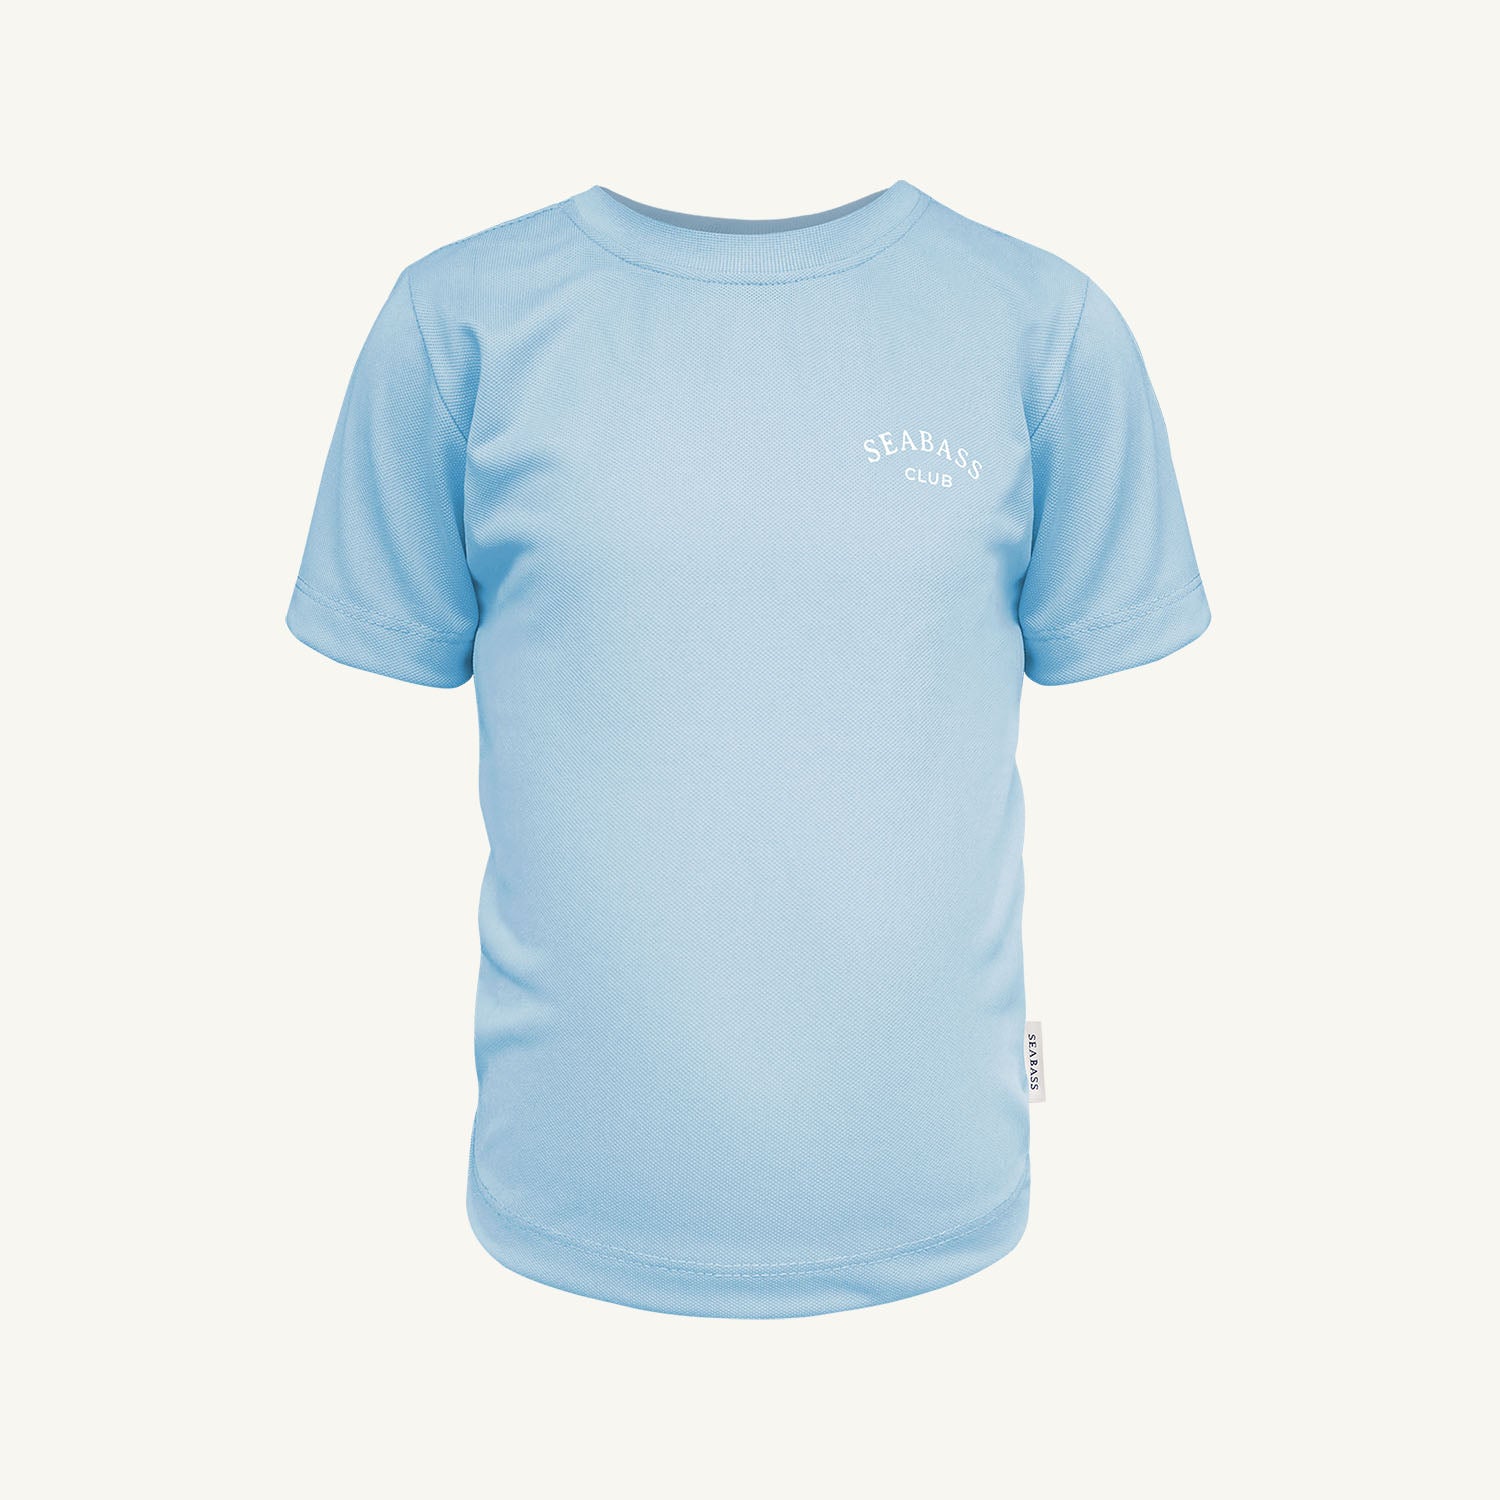 Camiseta de niño con protección solar - azul claro